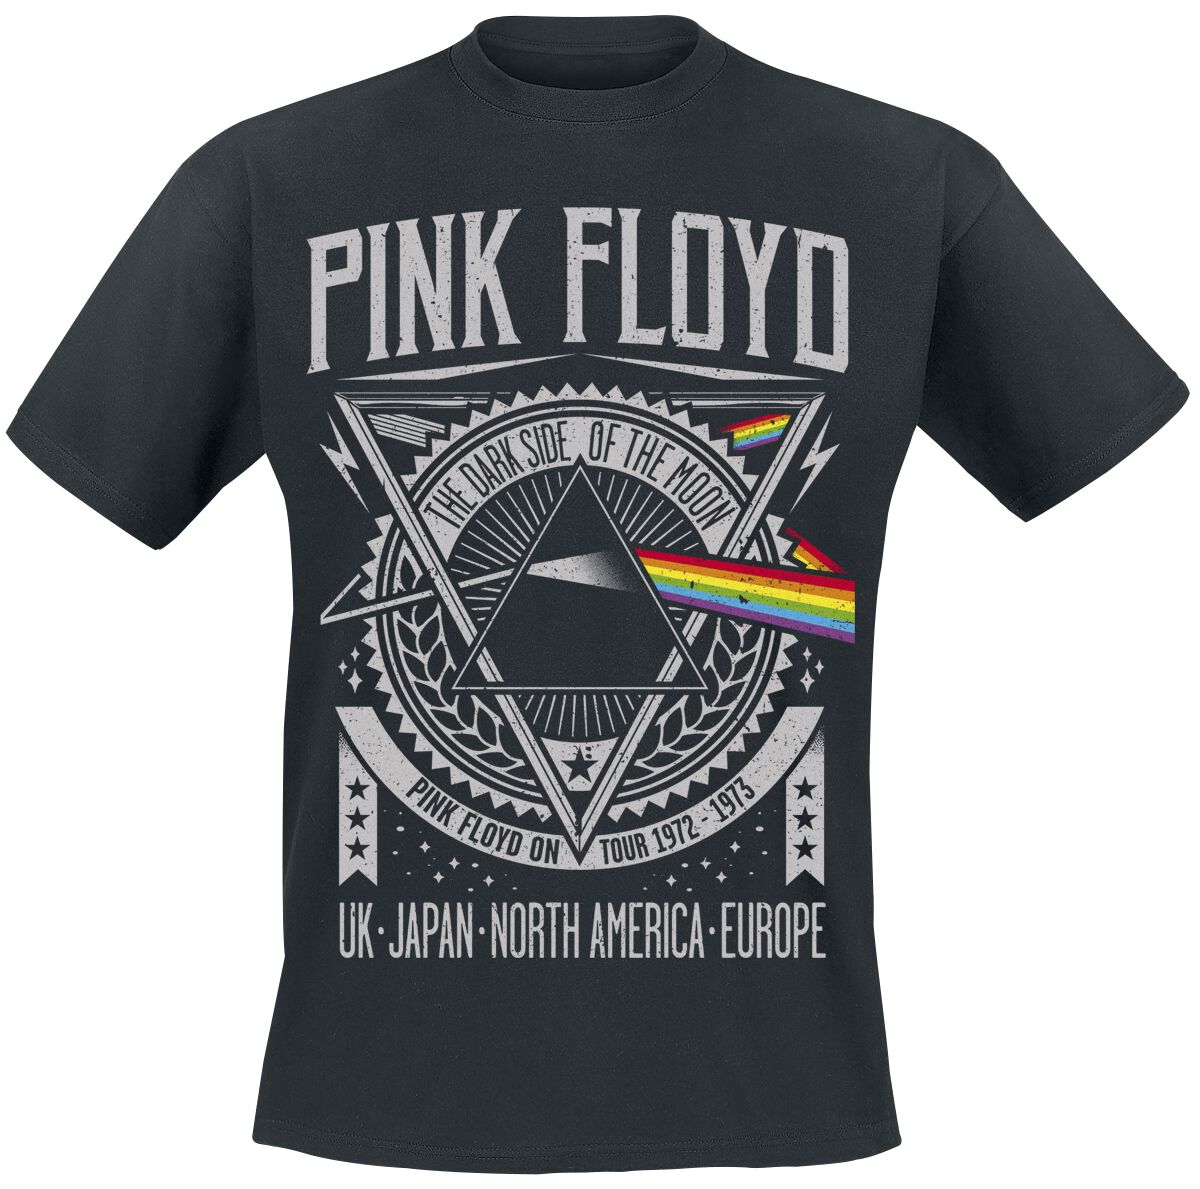 Pink Floyd T-Shirt - The Dark Side Of The Moon - Tour 1972 - M bis 3XL - für Männer - Größe XXL - schwarz  - Lizenziertes Merchandise!